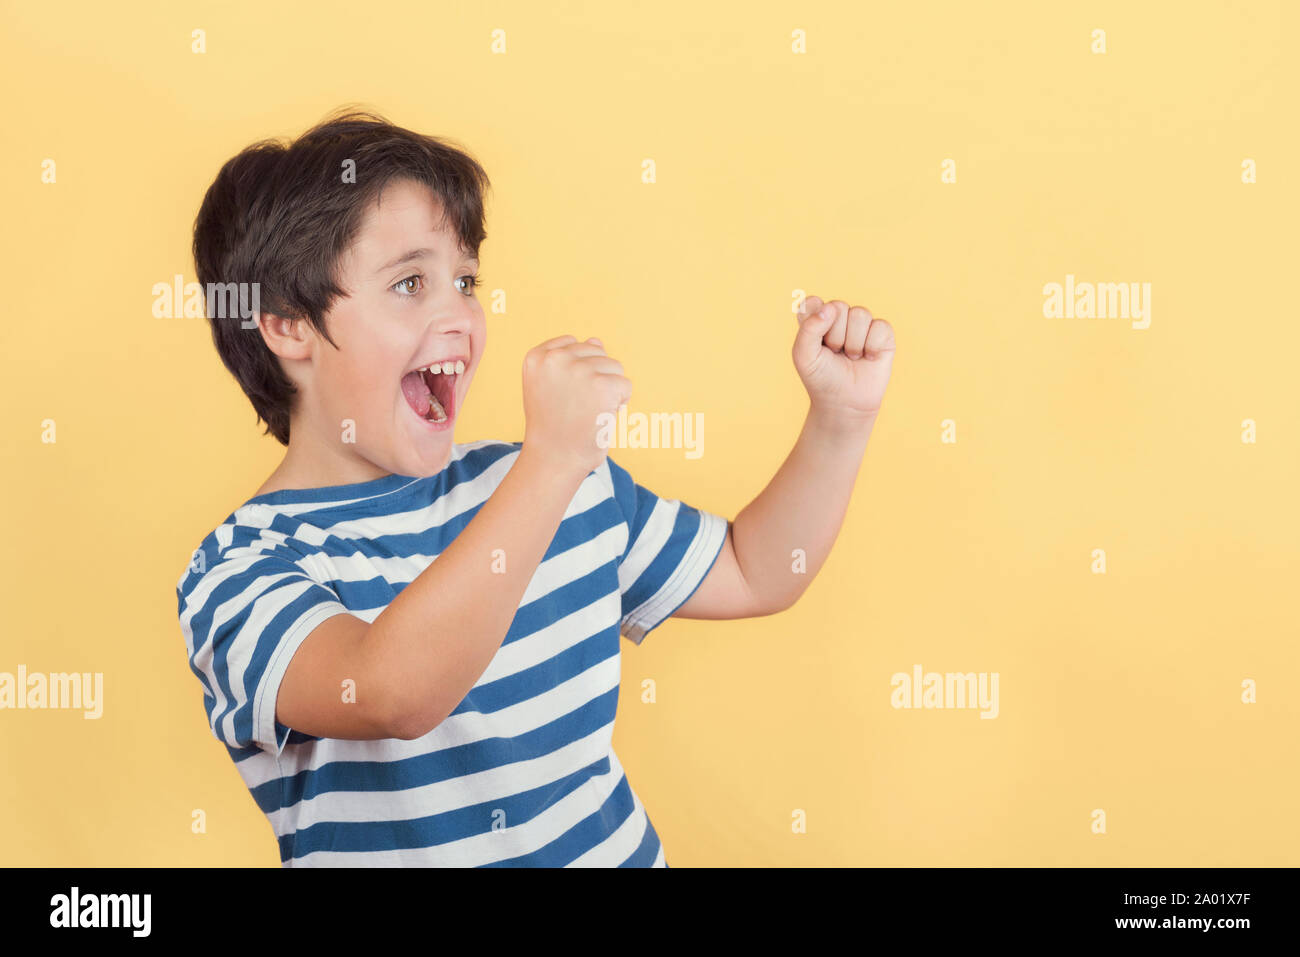 Lustig Kind mit den Händen in der Luft schreien auf gelbem Hintergrund Stockfoto